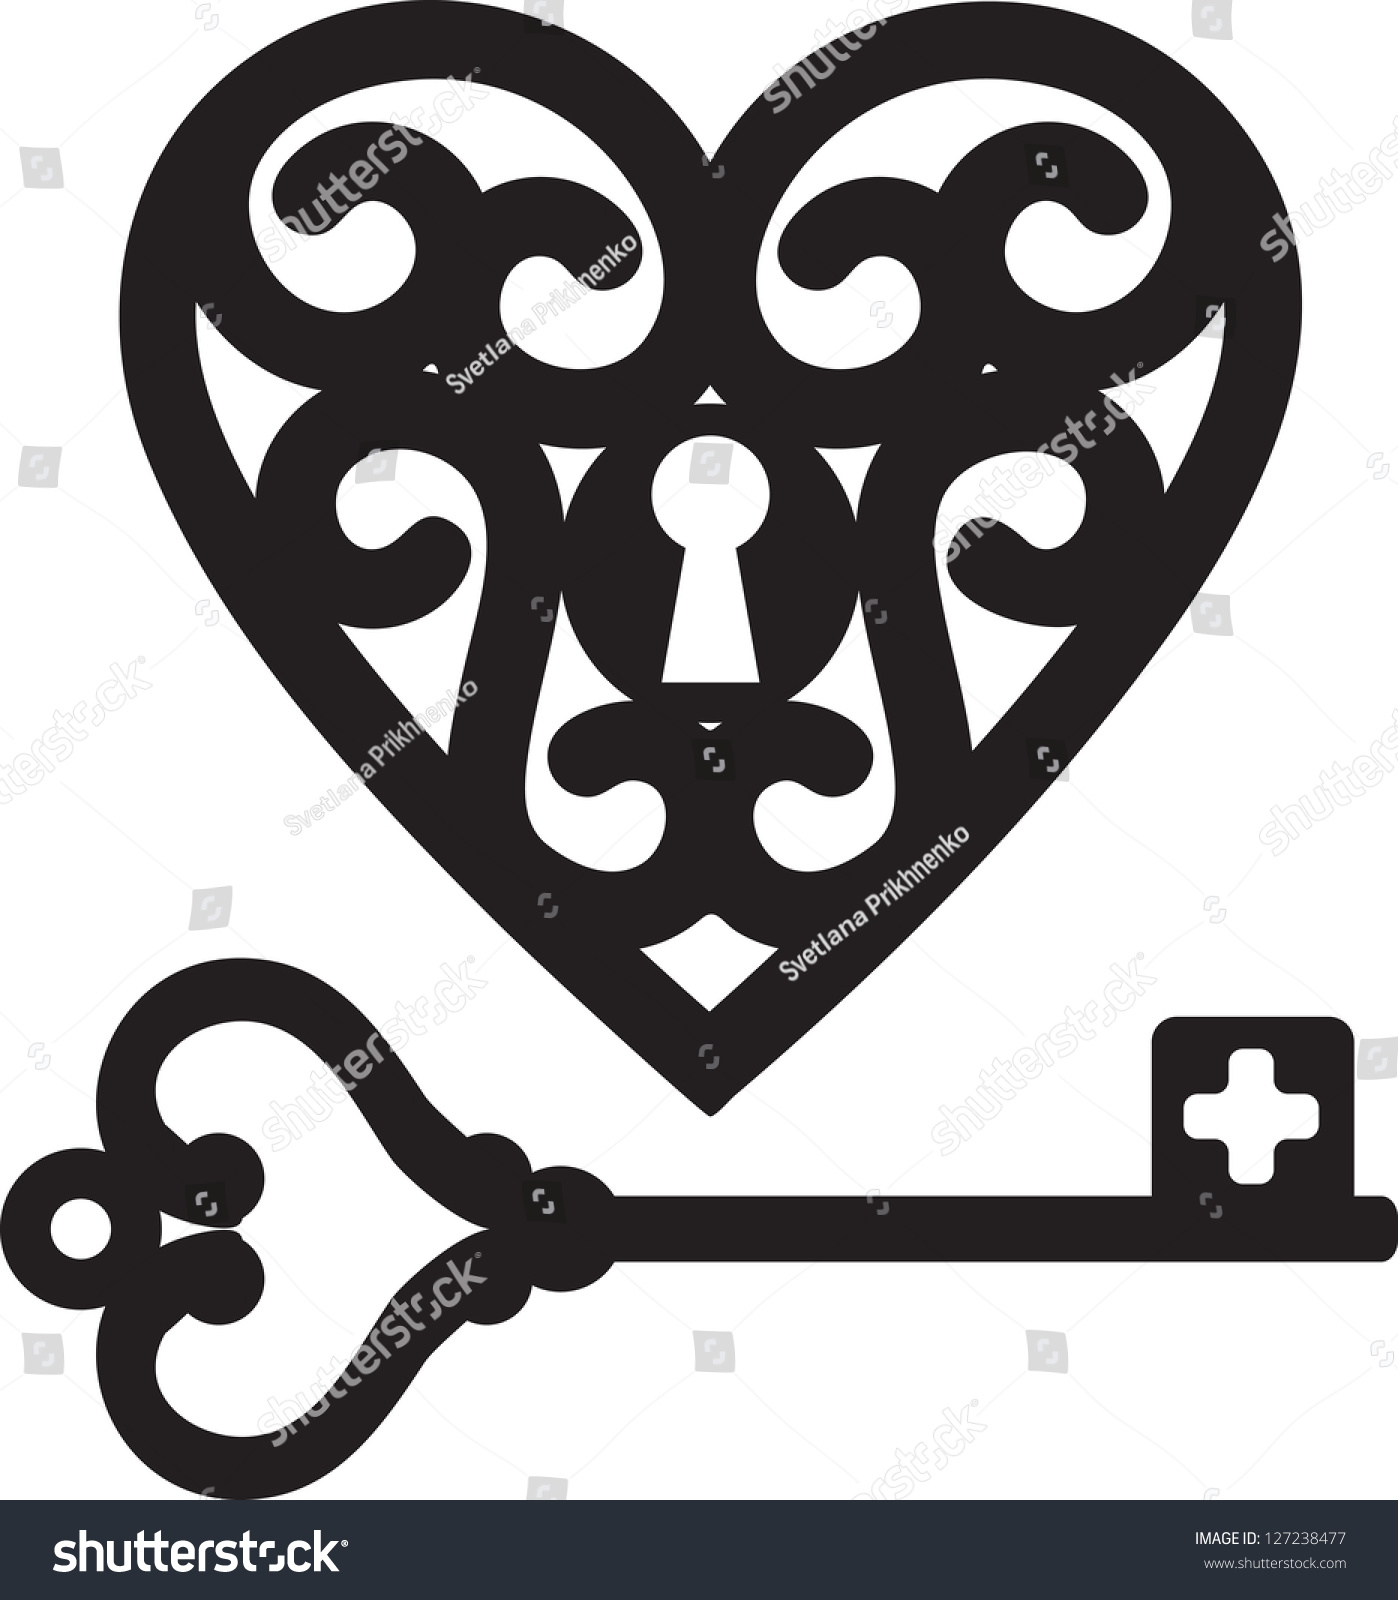 free heart key clipart - photo #37